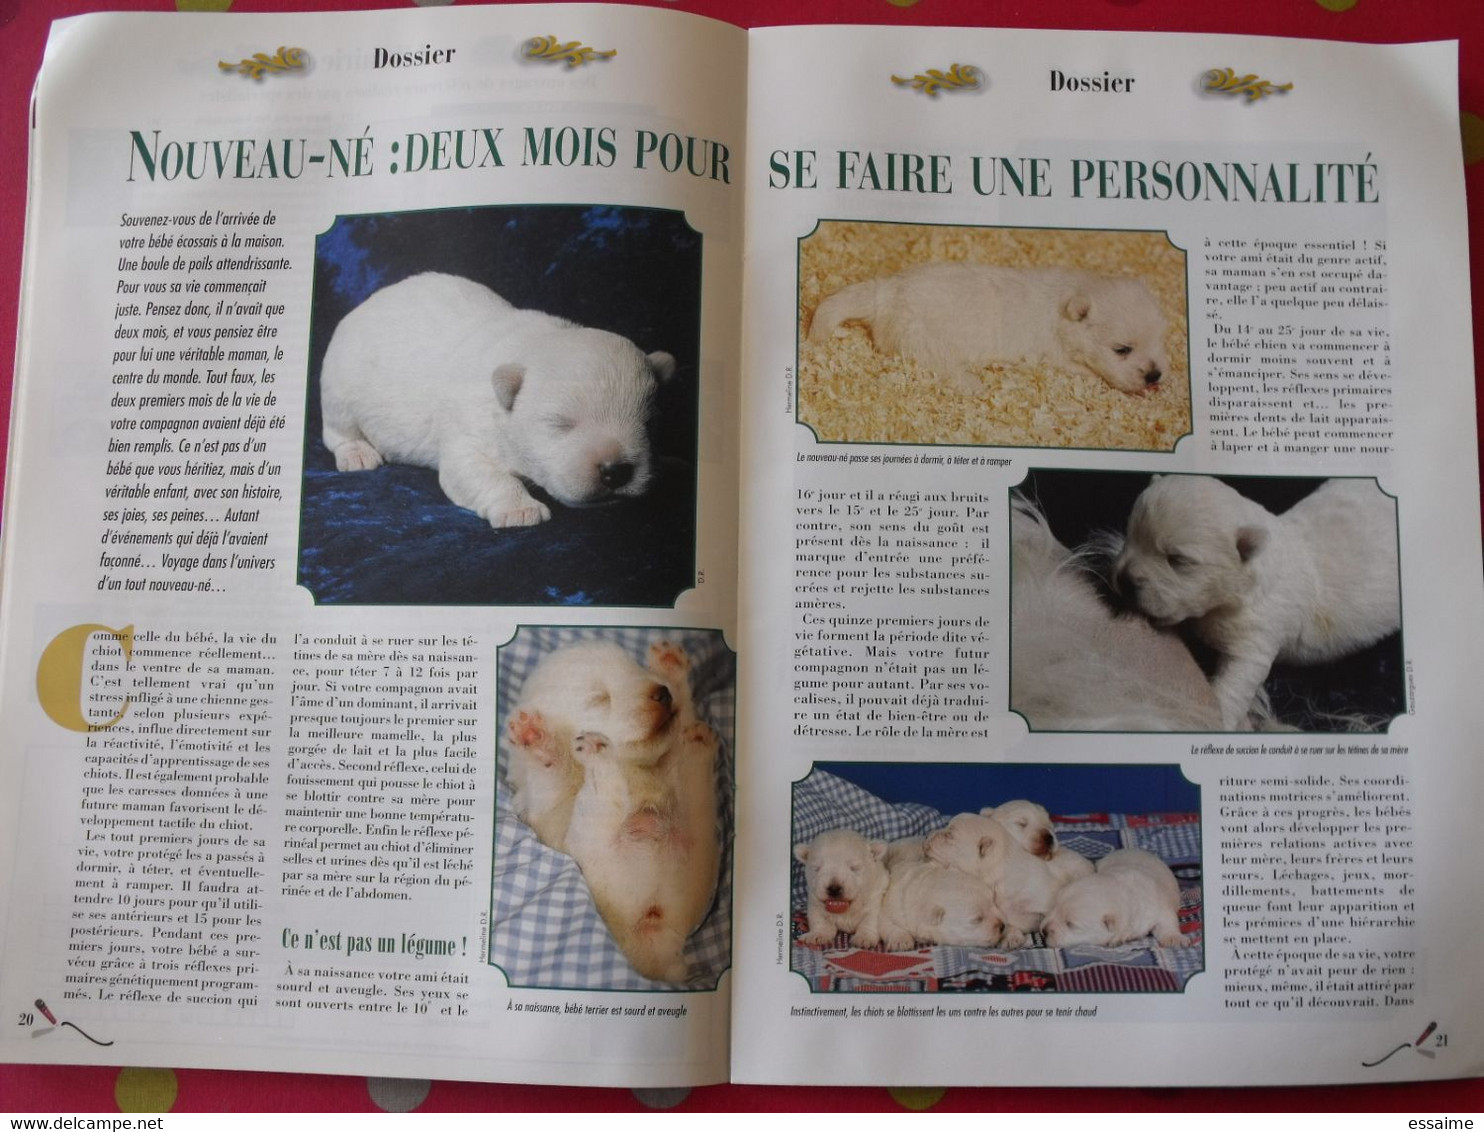 2 Revues Terrier D'Ecosse Magazine 2001 Et 2002. N° 13 Et N° 16. Scottish Westie Copilot Skye Shih Tzu - Tierwelt